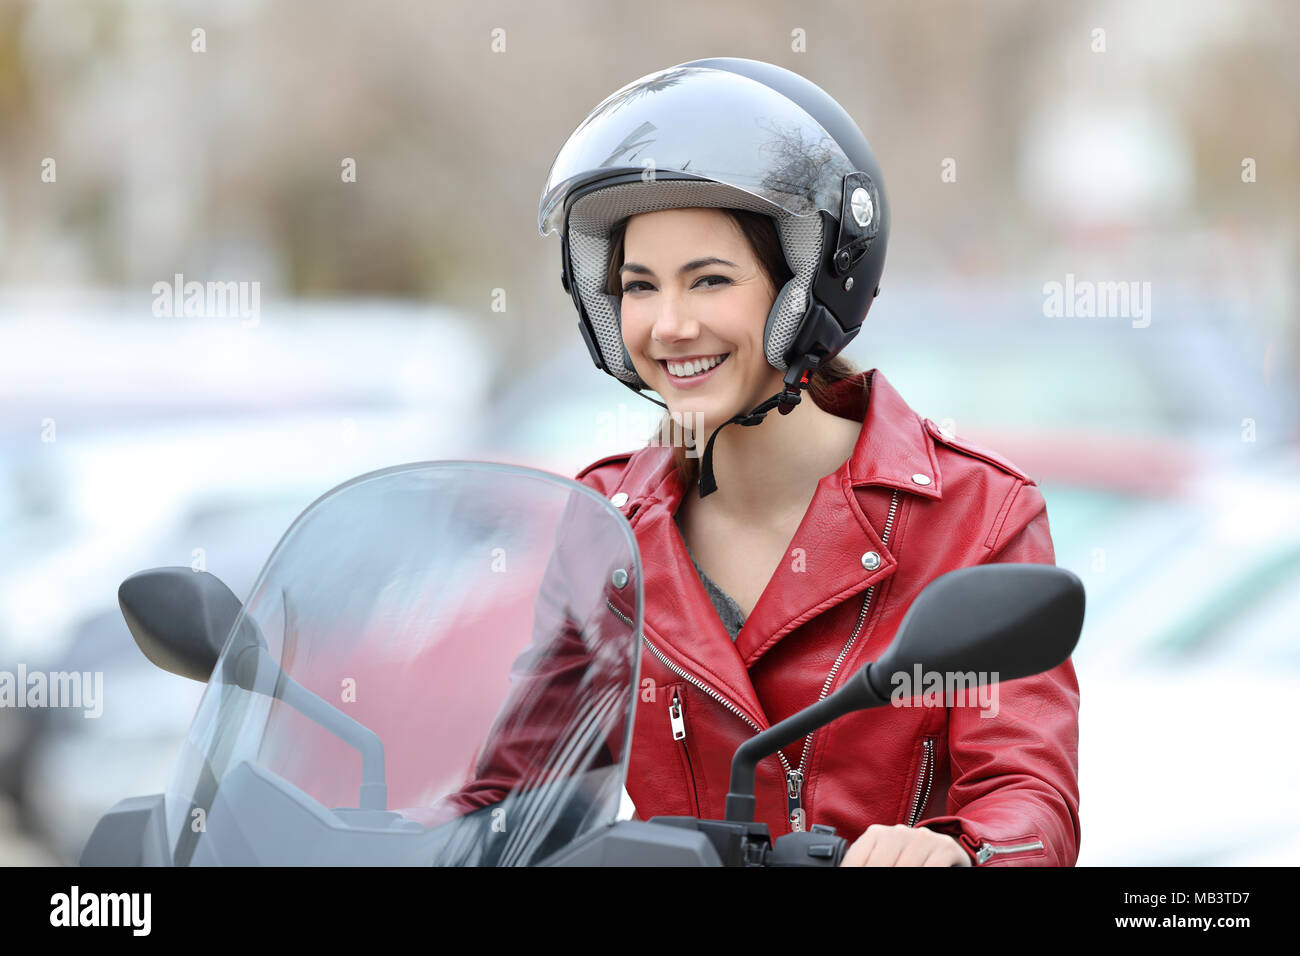 Motards heureux assis sur une moto vous regarde dans la rue Banque D'Images